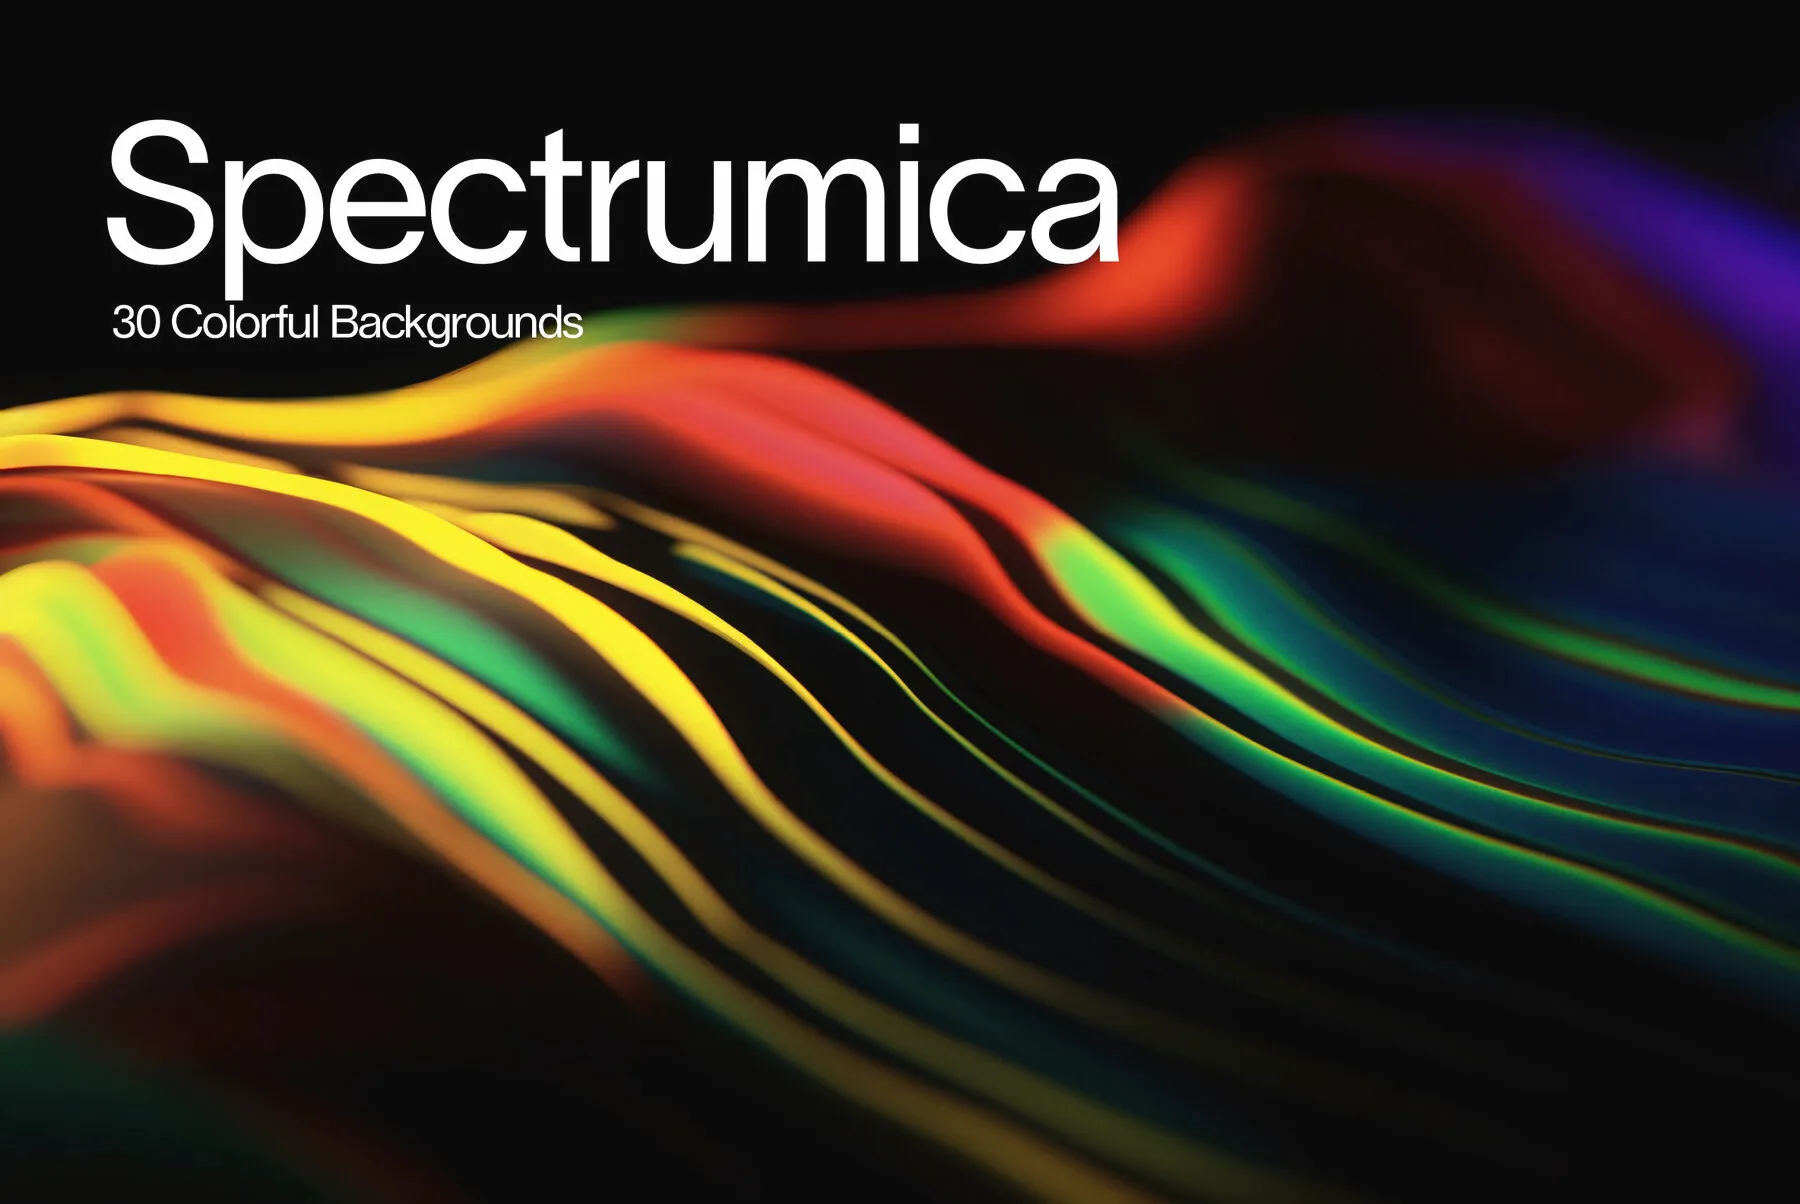 Spectrumica